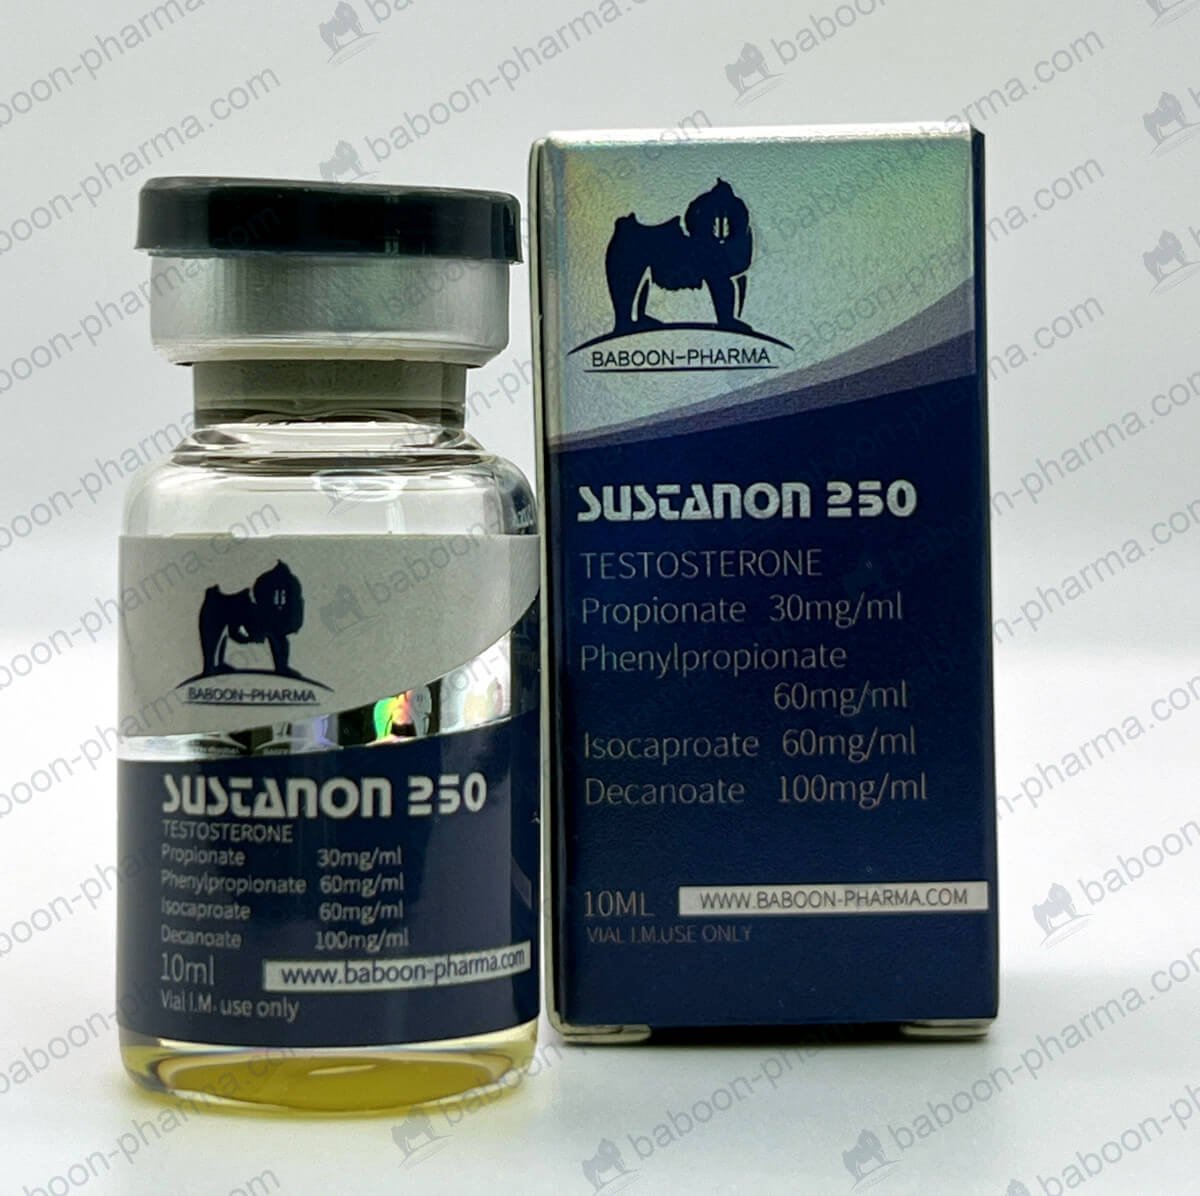 Baboon-Pharma-Oil_Sustanon_250_1